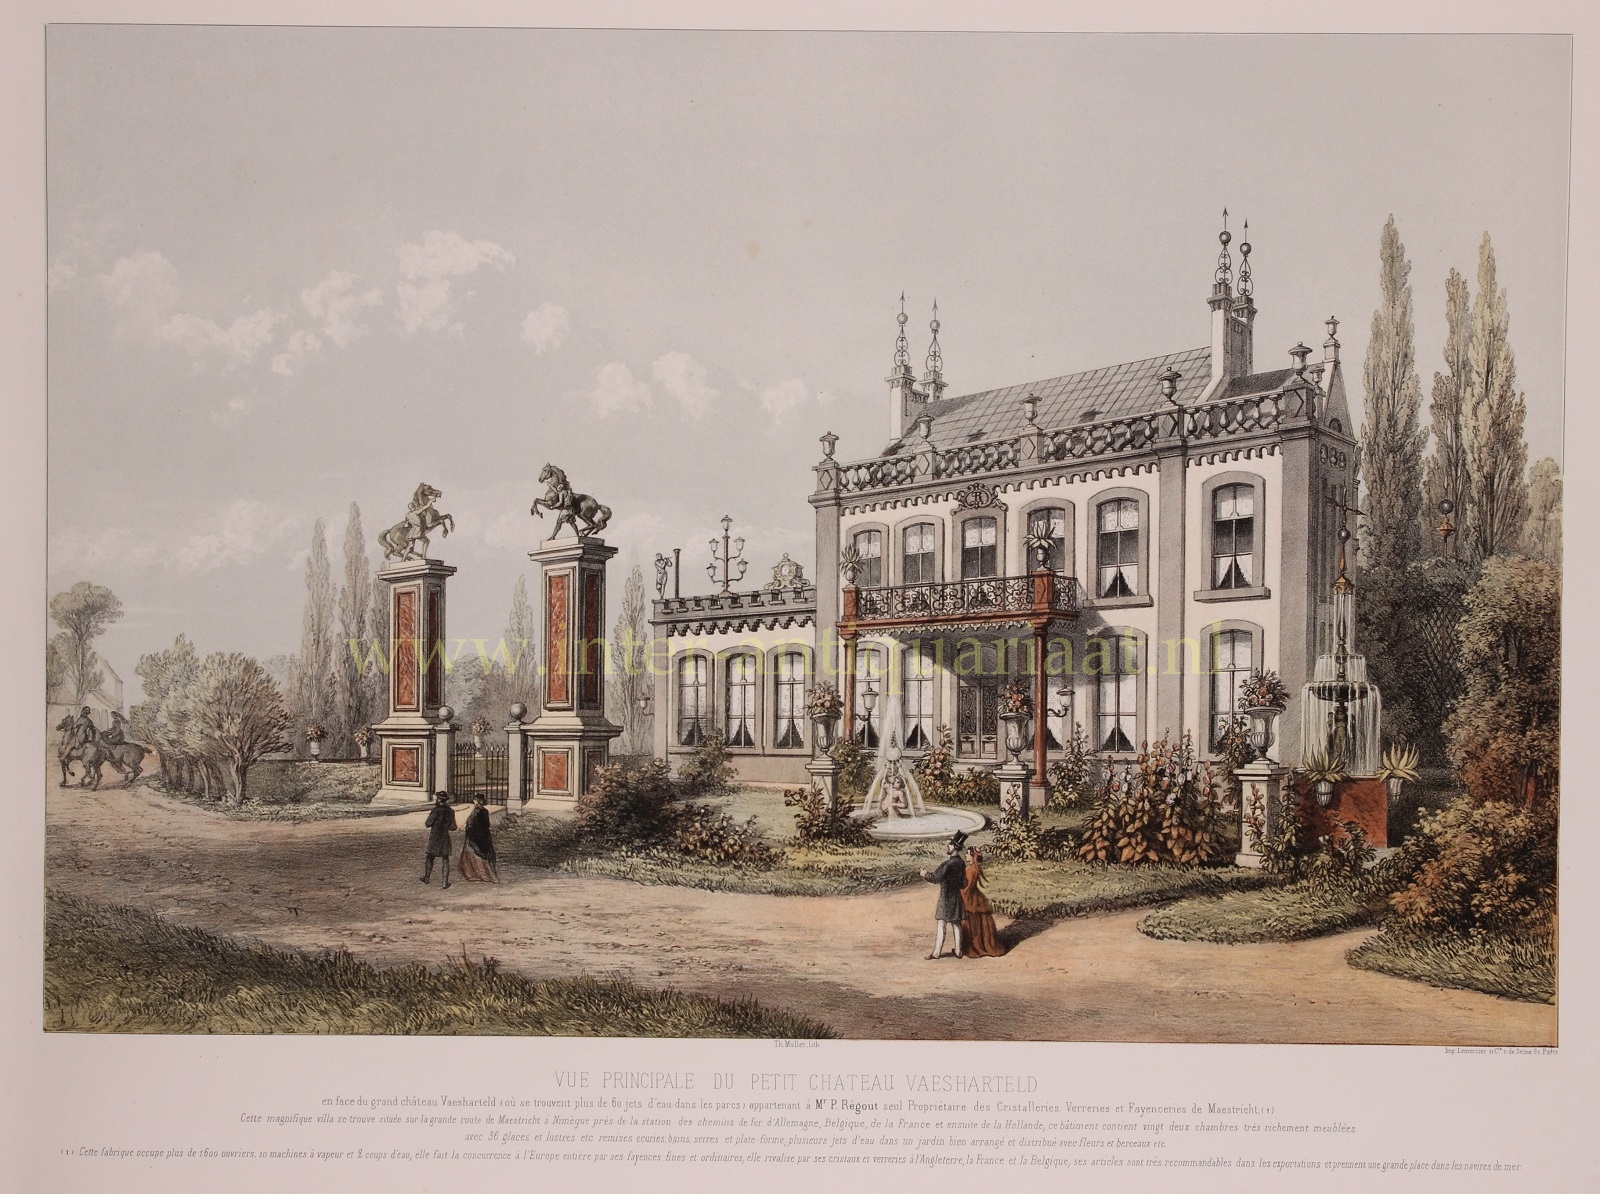  - Klein Vaeshartelt (Maastricht), front view- Theodore Mller + Lemercier, 1863